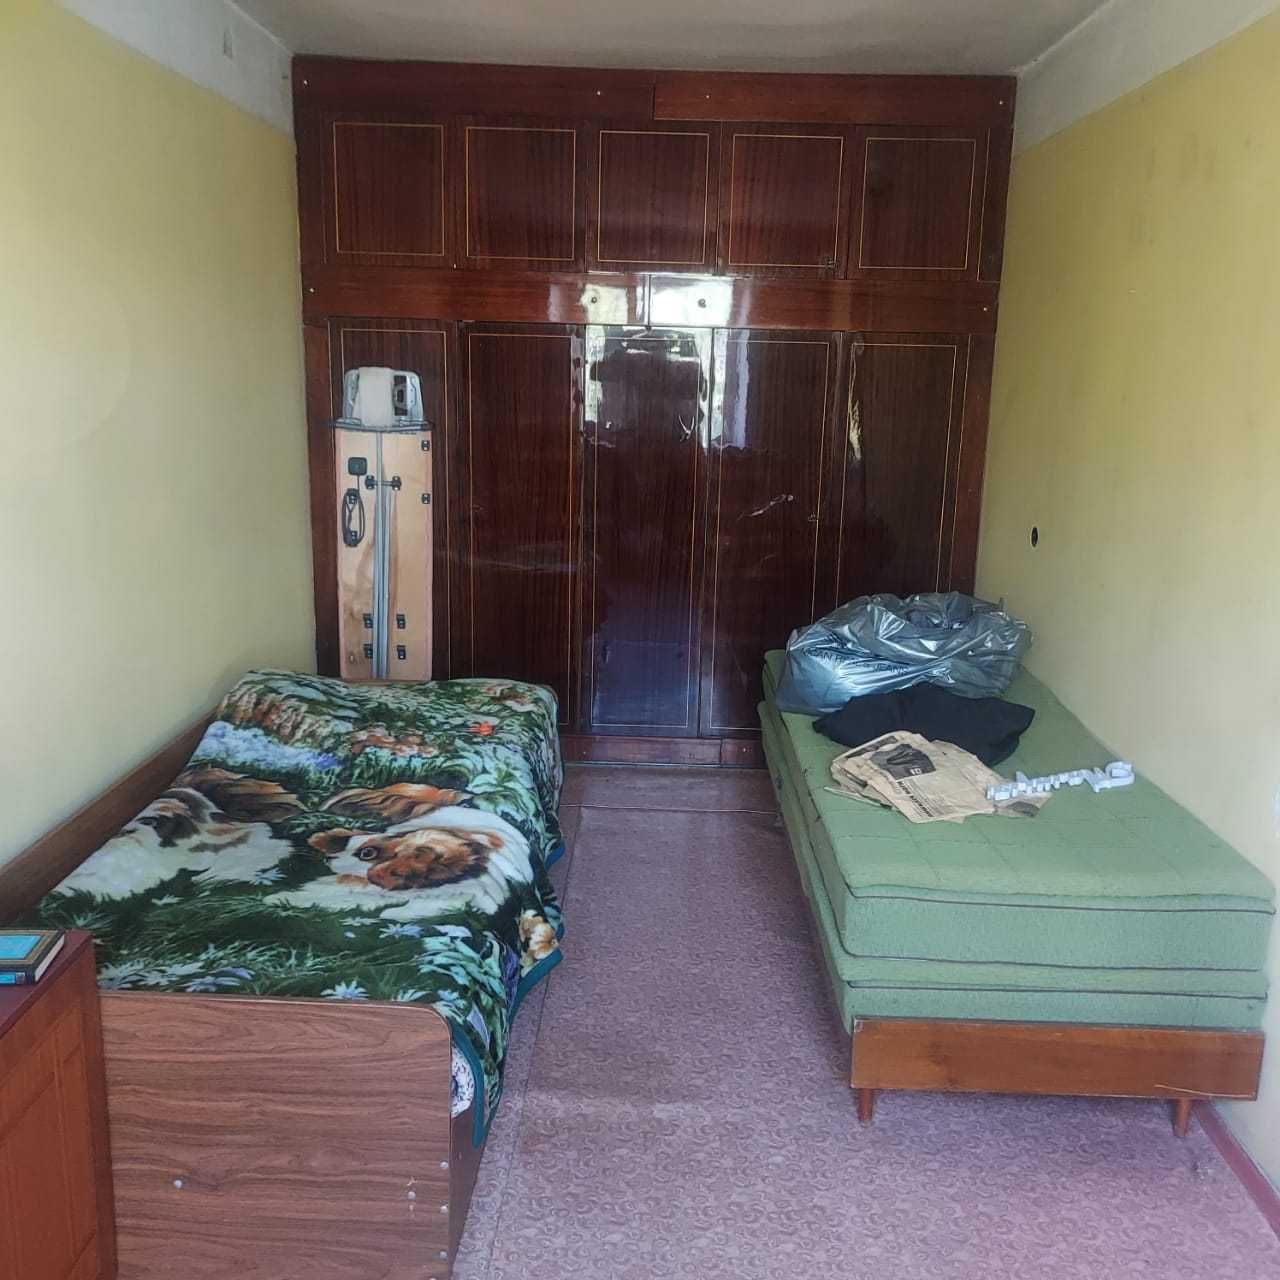 Продам 2-х комнатную квартиру в спальном районе города на Ержанова.